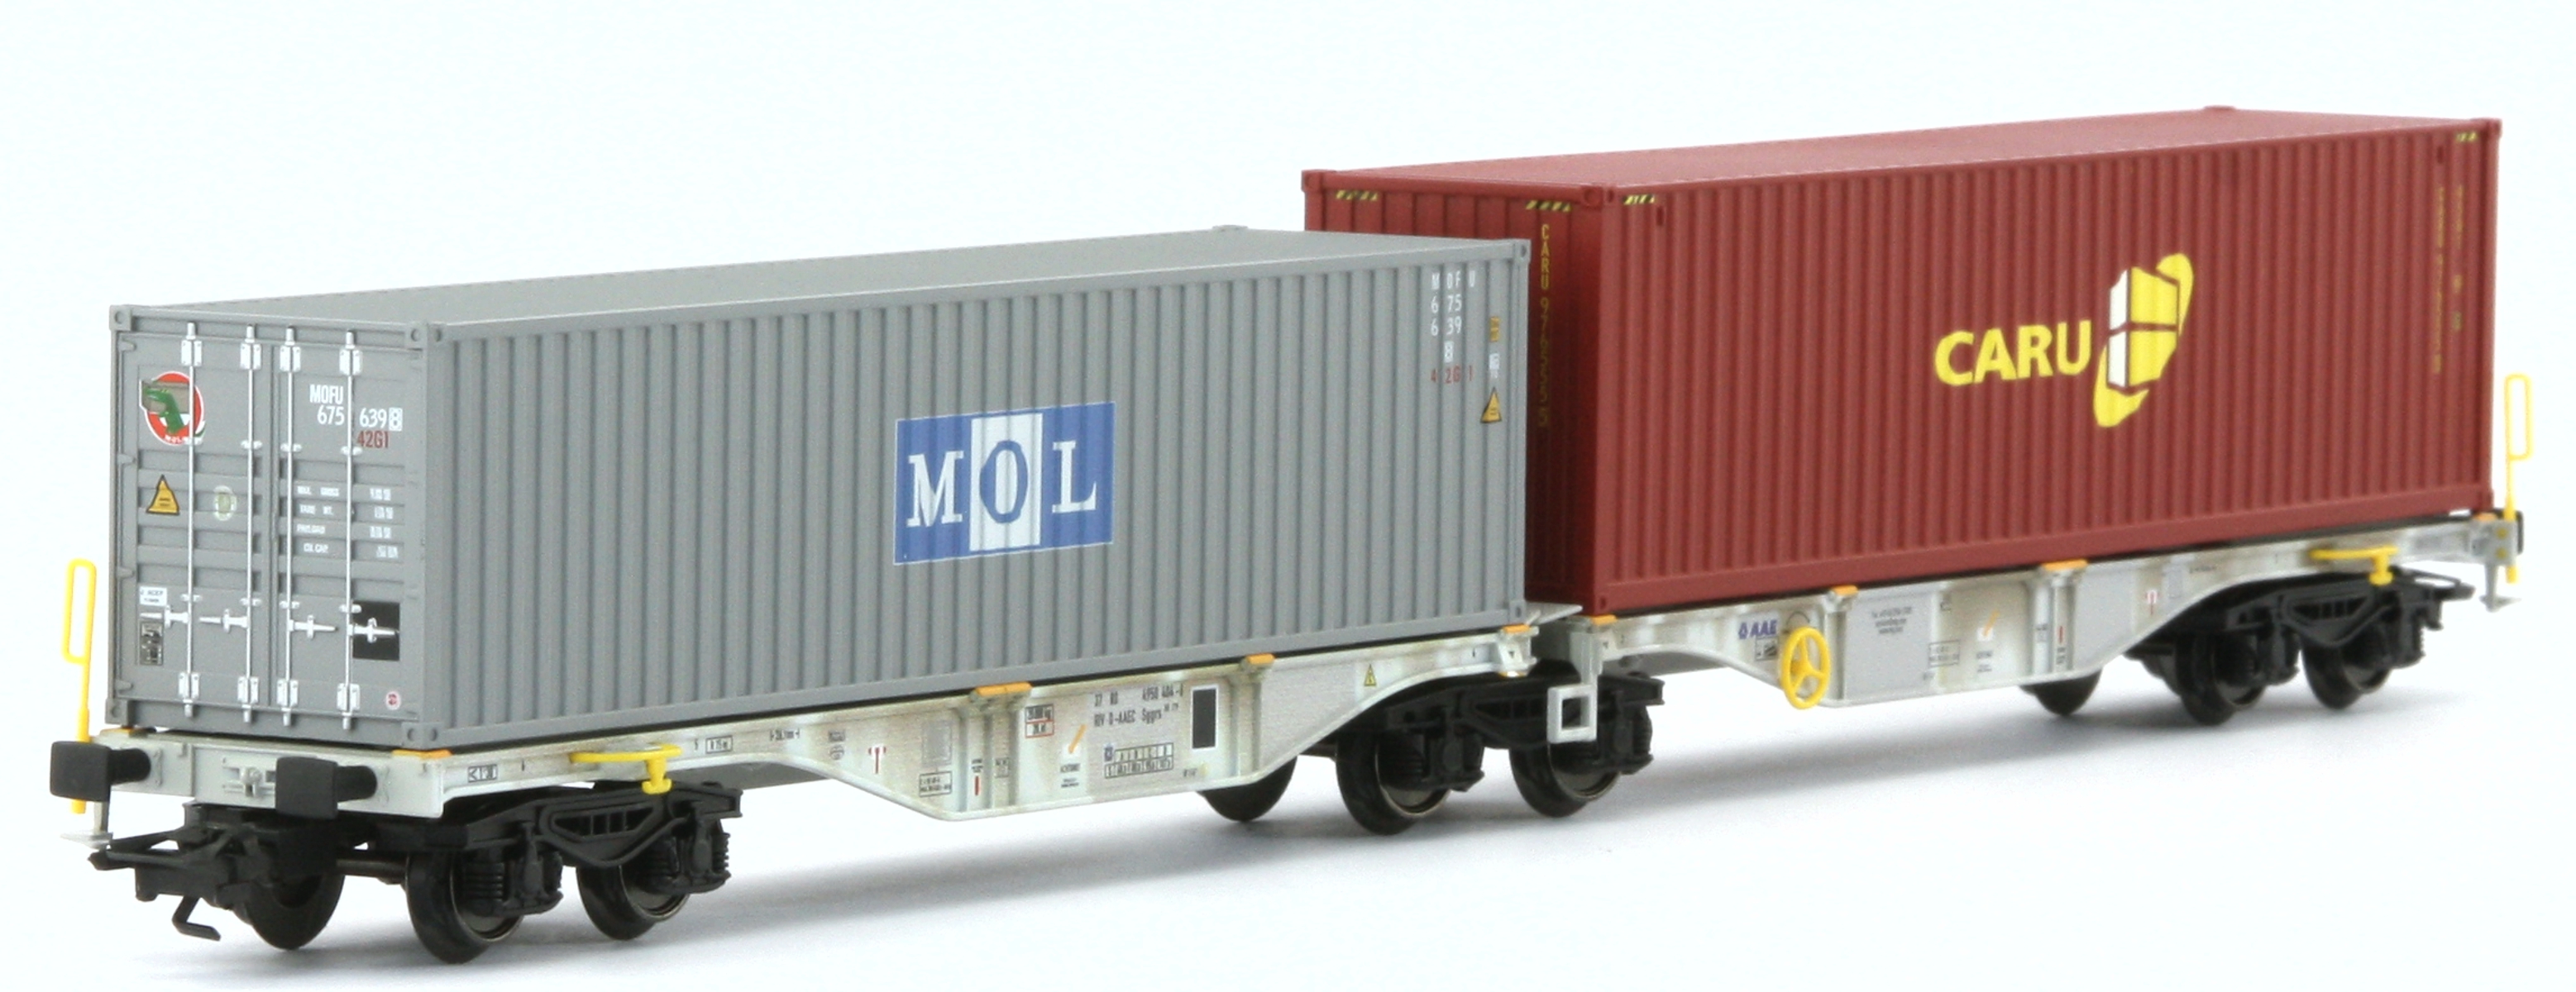 Märklin 47811 - Doppel-Containertragwagen Sggrss 80, AAE, Ep.VI 'MOL, CARU'